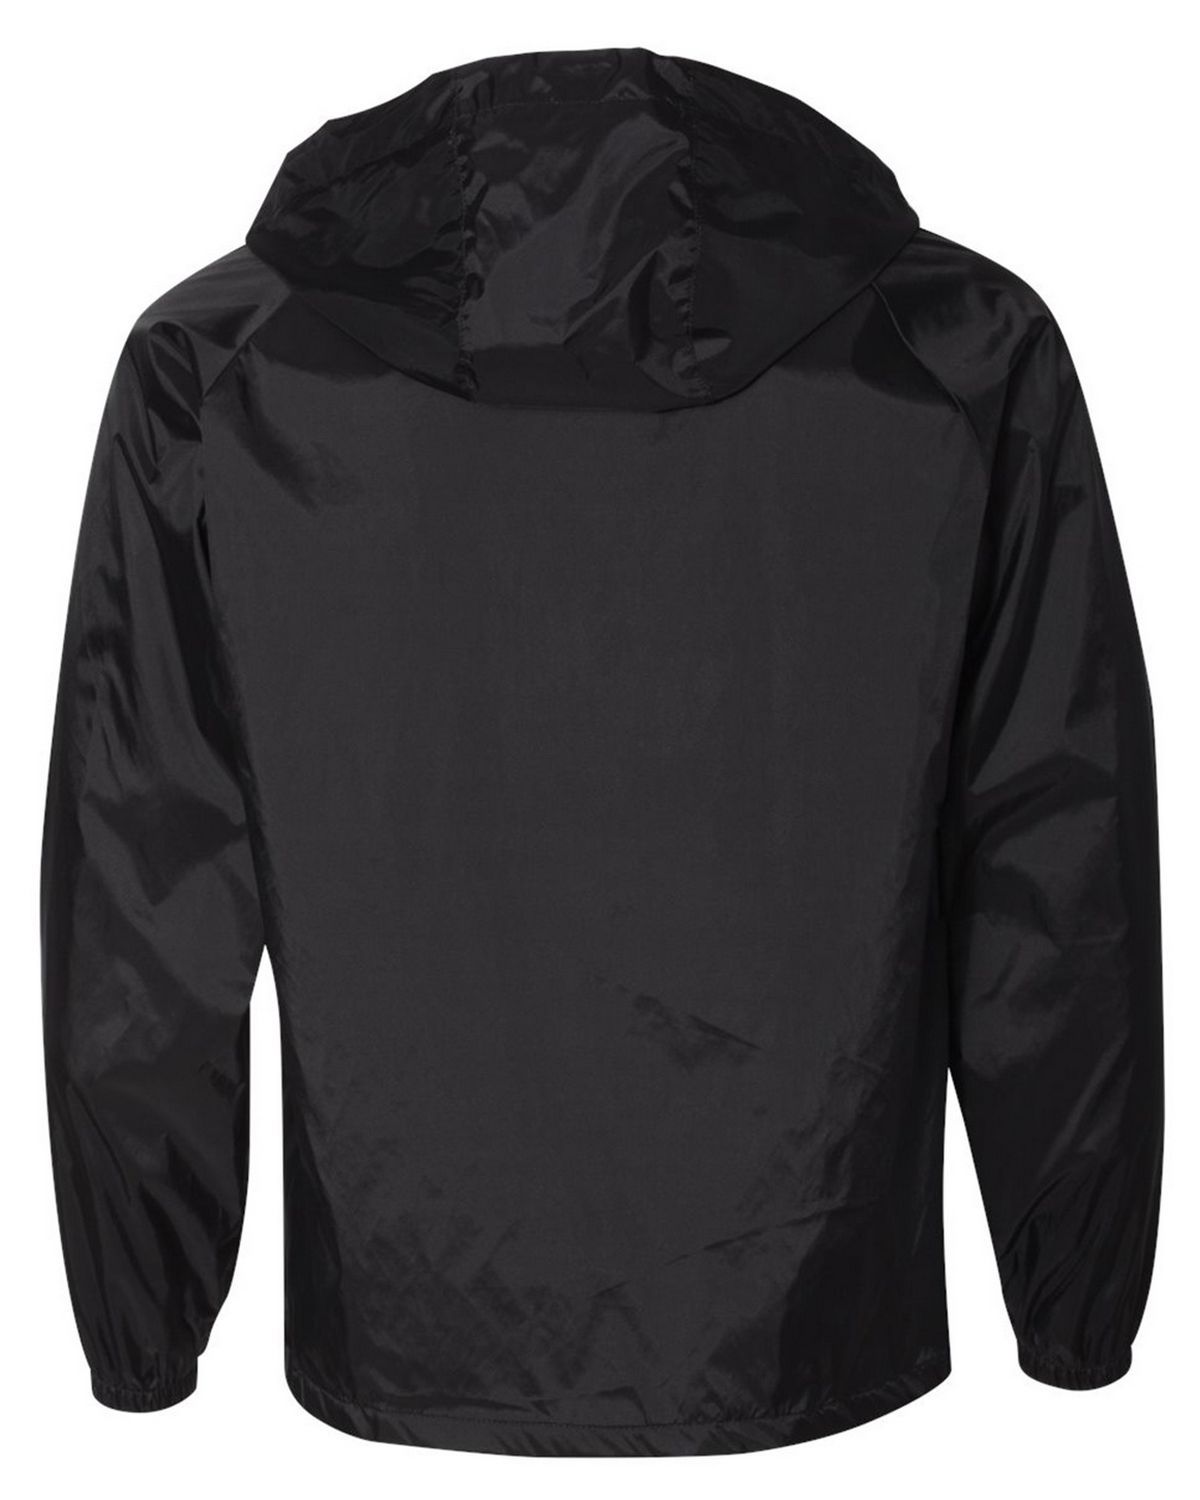 Augusta Sportswear 3102 Hooded Coaches Jacket